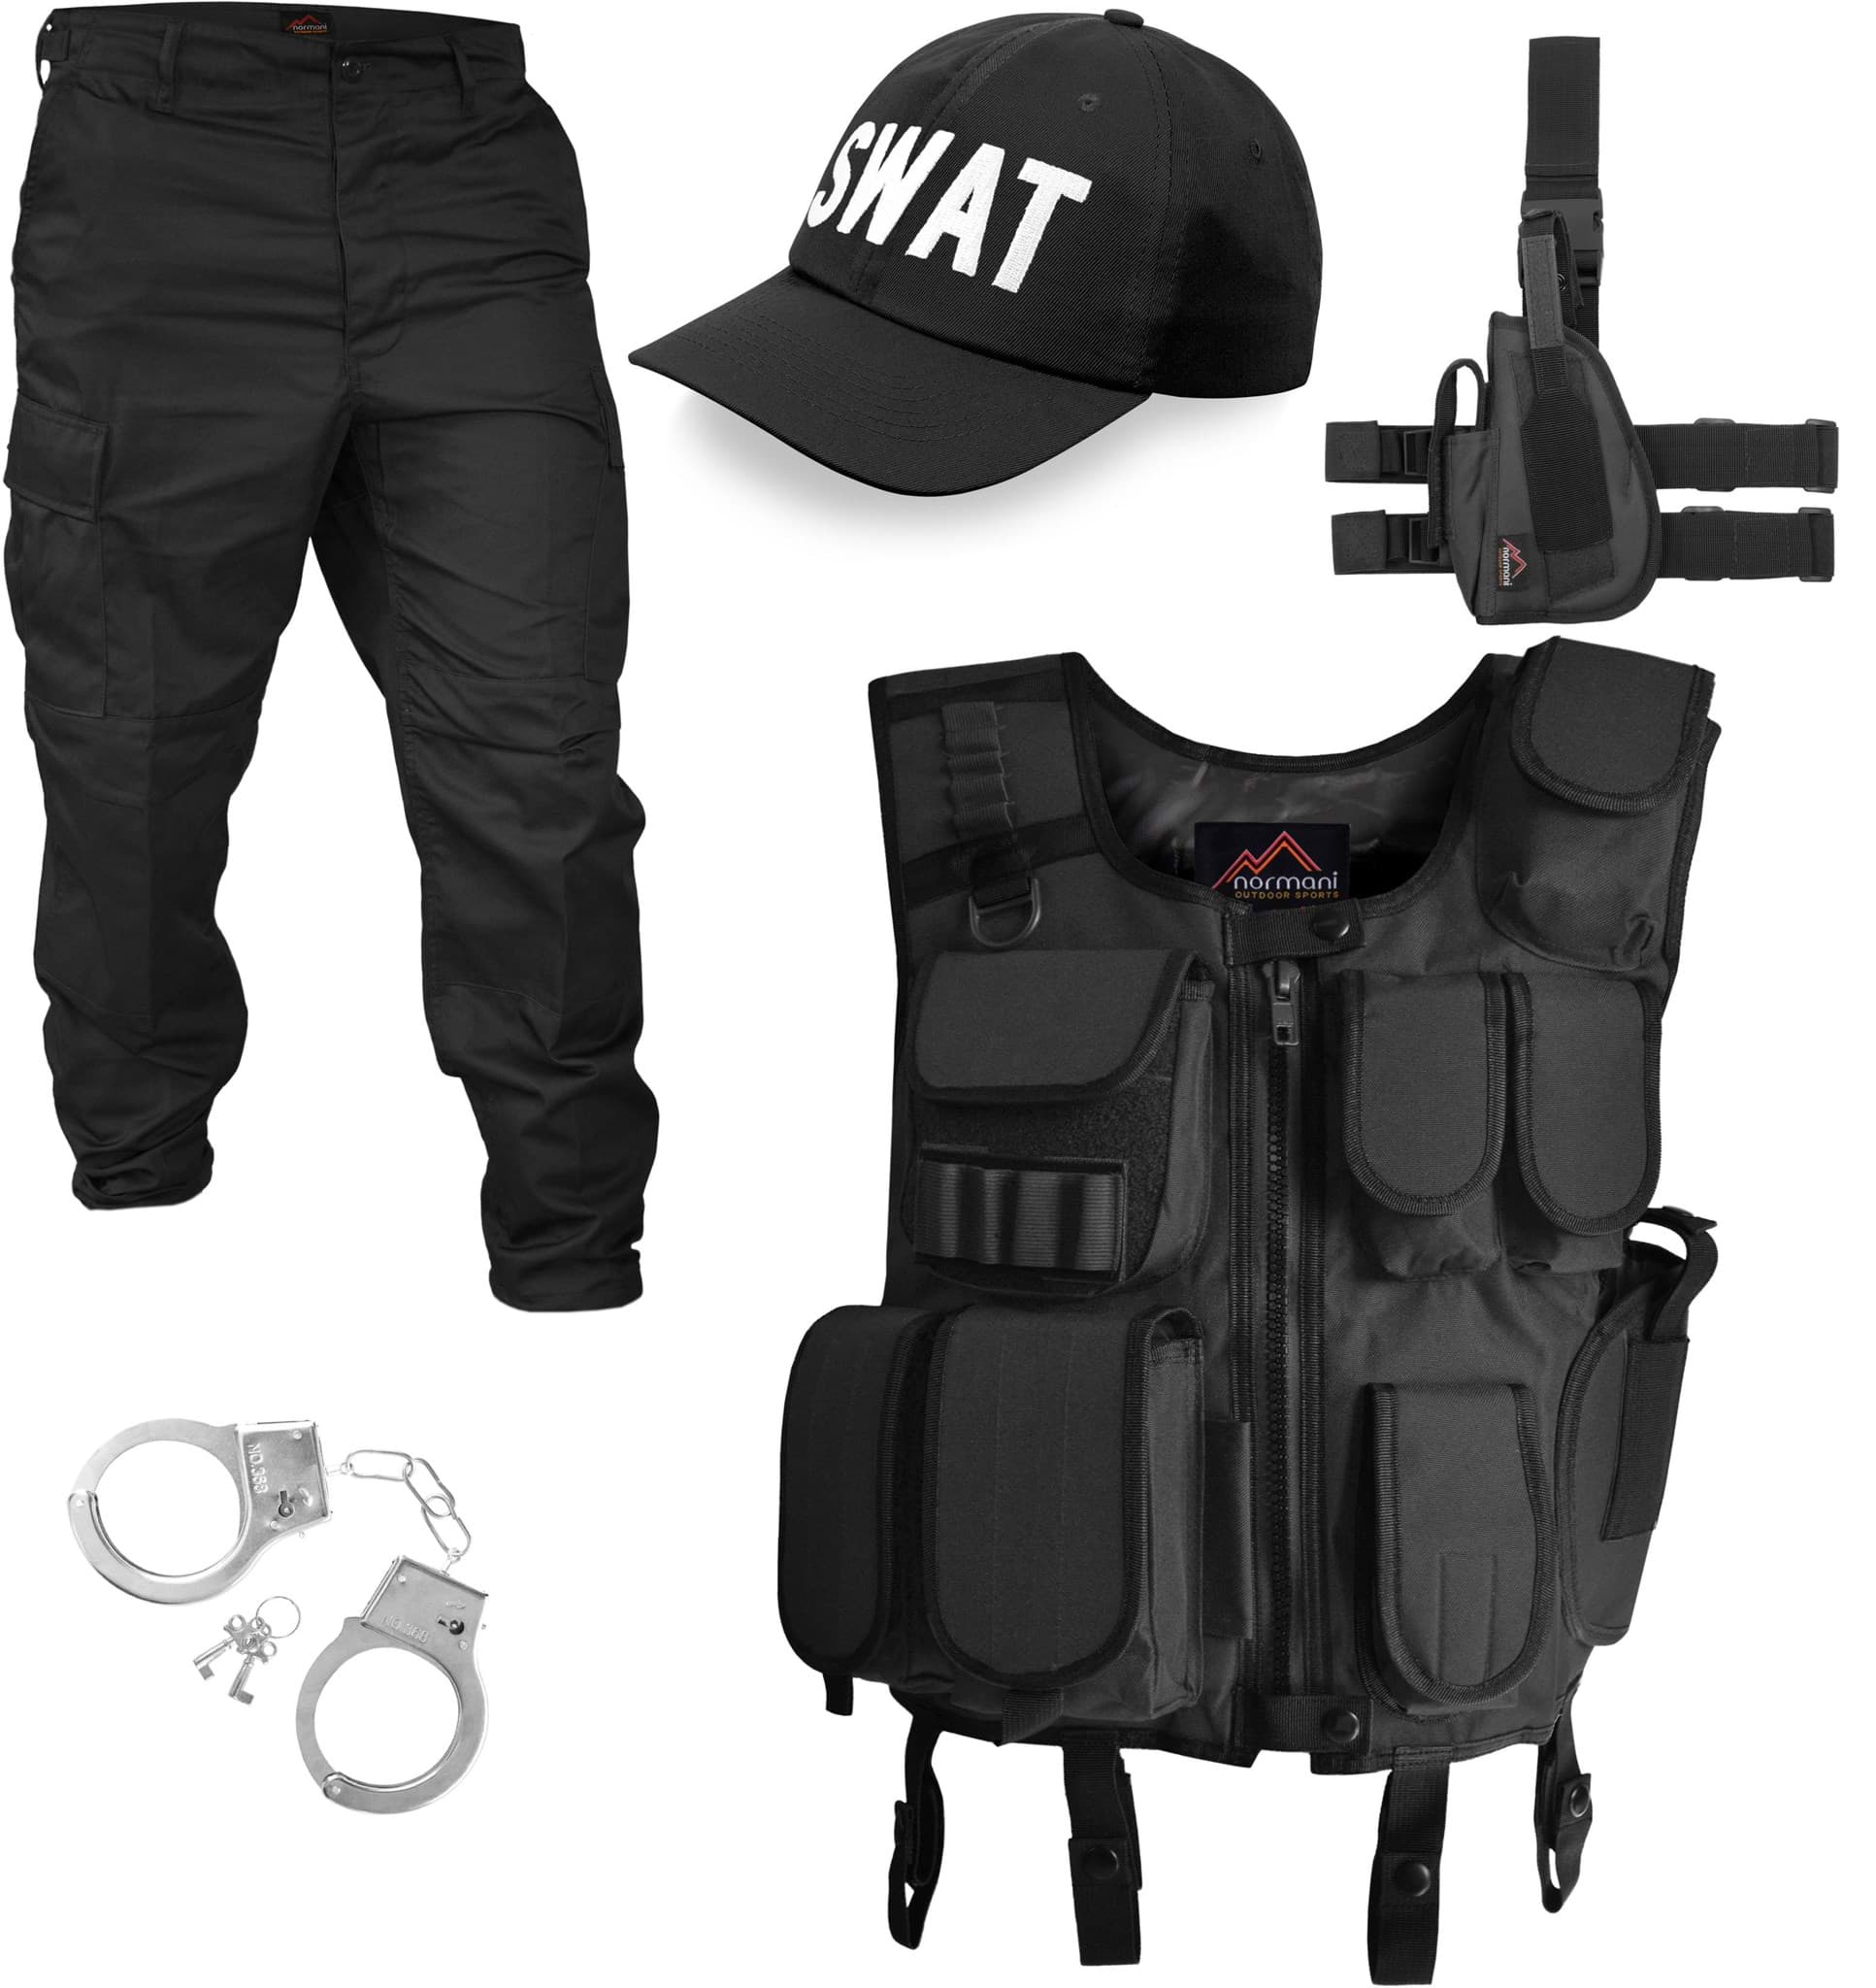 Bild von SWAT / SECURITY / POLICE Kostüm bestehend aus Weste, Patch, Hose, rechtem Beinholster, Cap und Handschellen SWAT